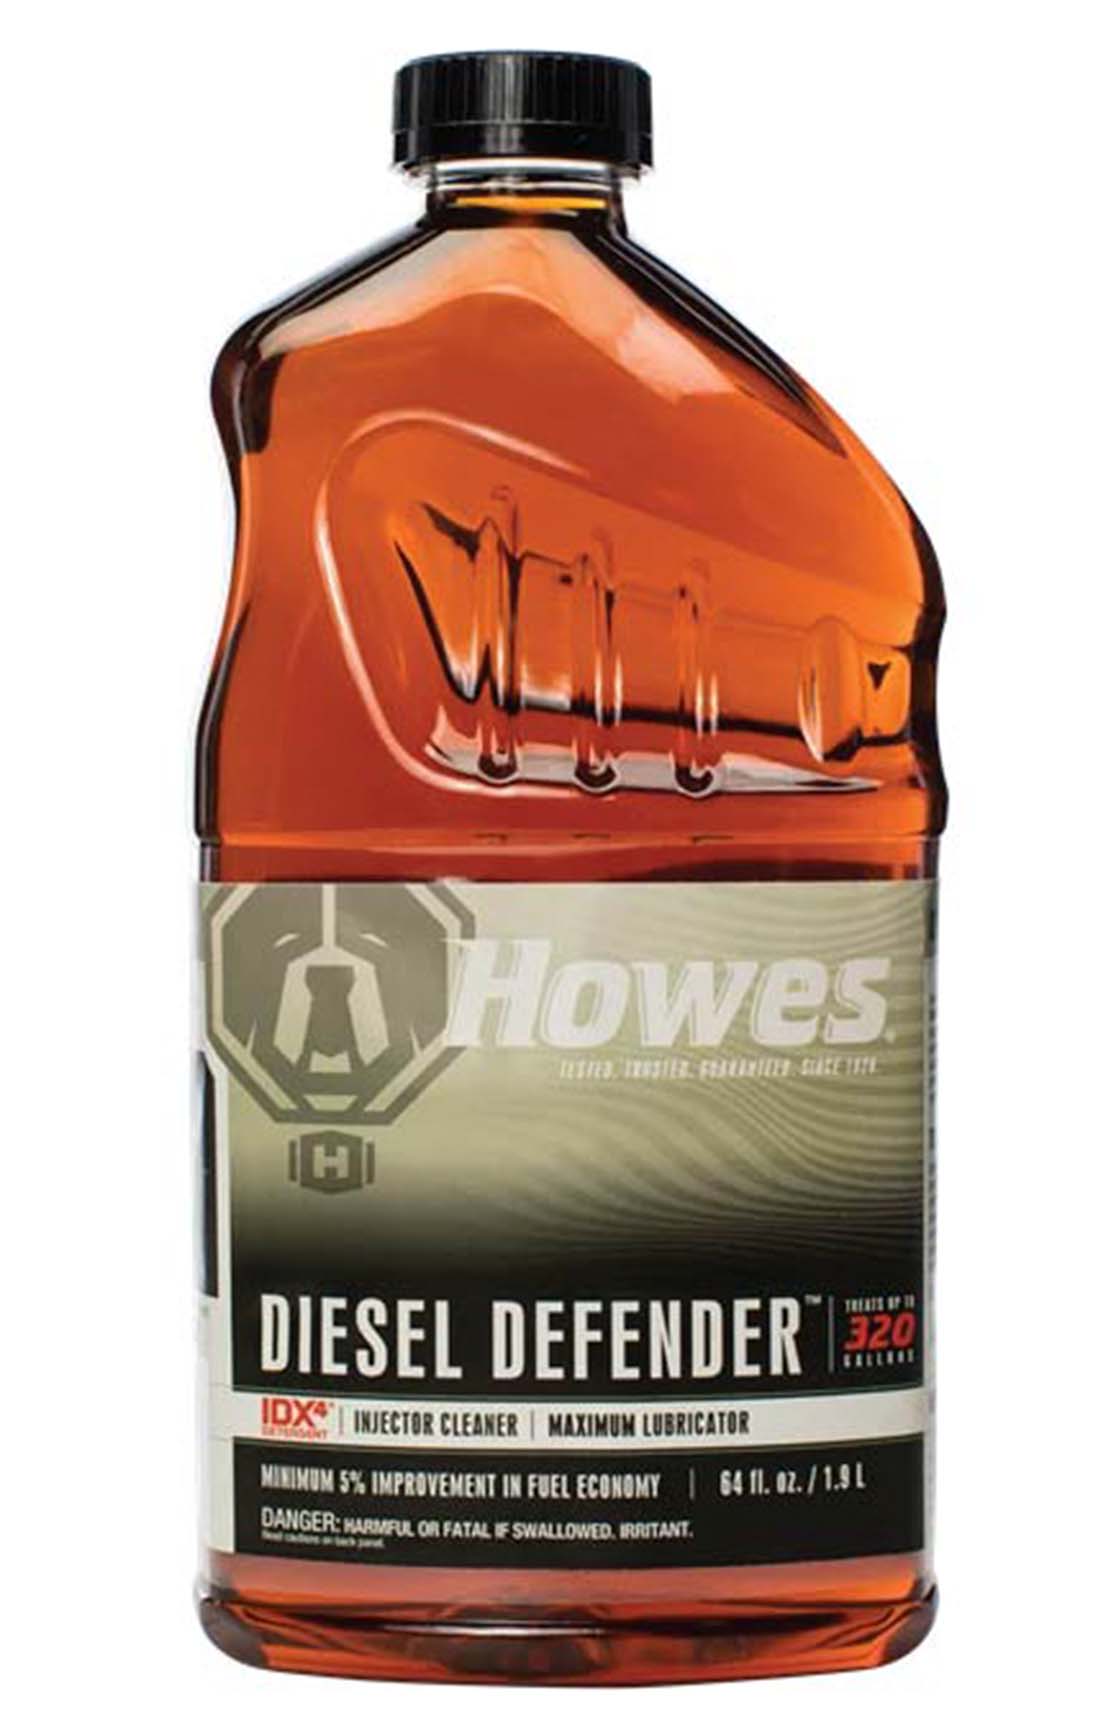 Howes diesel Defender